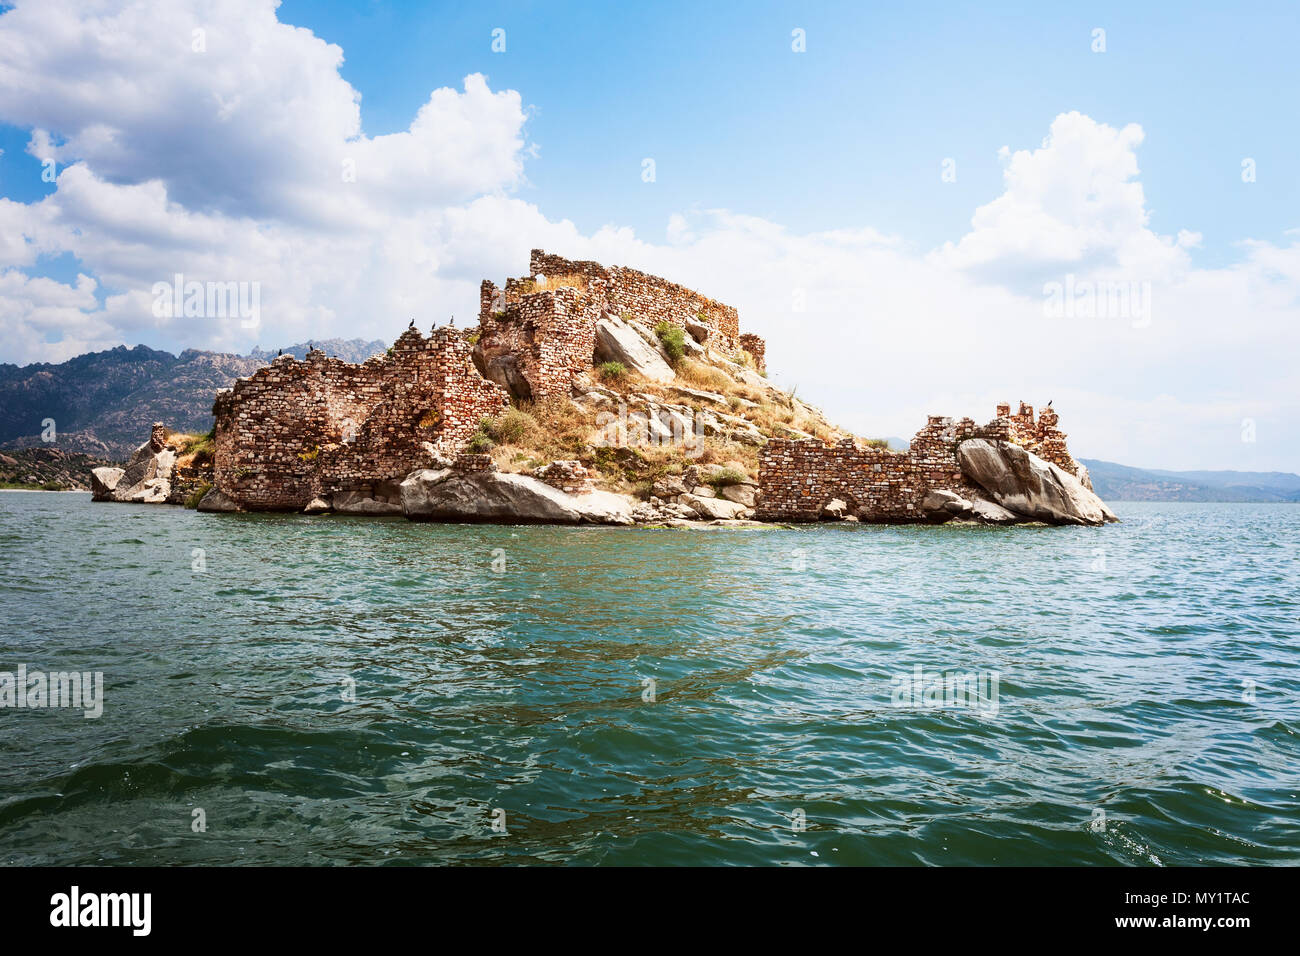 Île avec rock et de ruines antiques sur le lac Bafa, parc national en Turquie. Paysage de mer et de destinations de voyage Banque D'Images